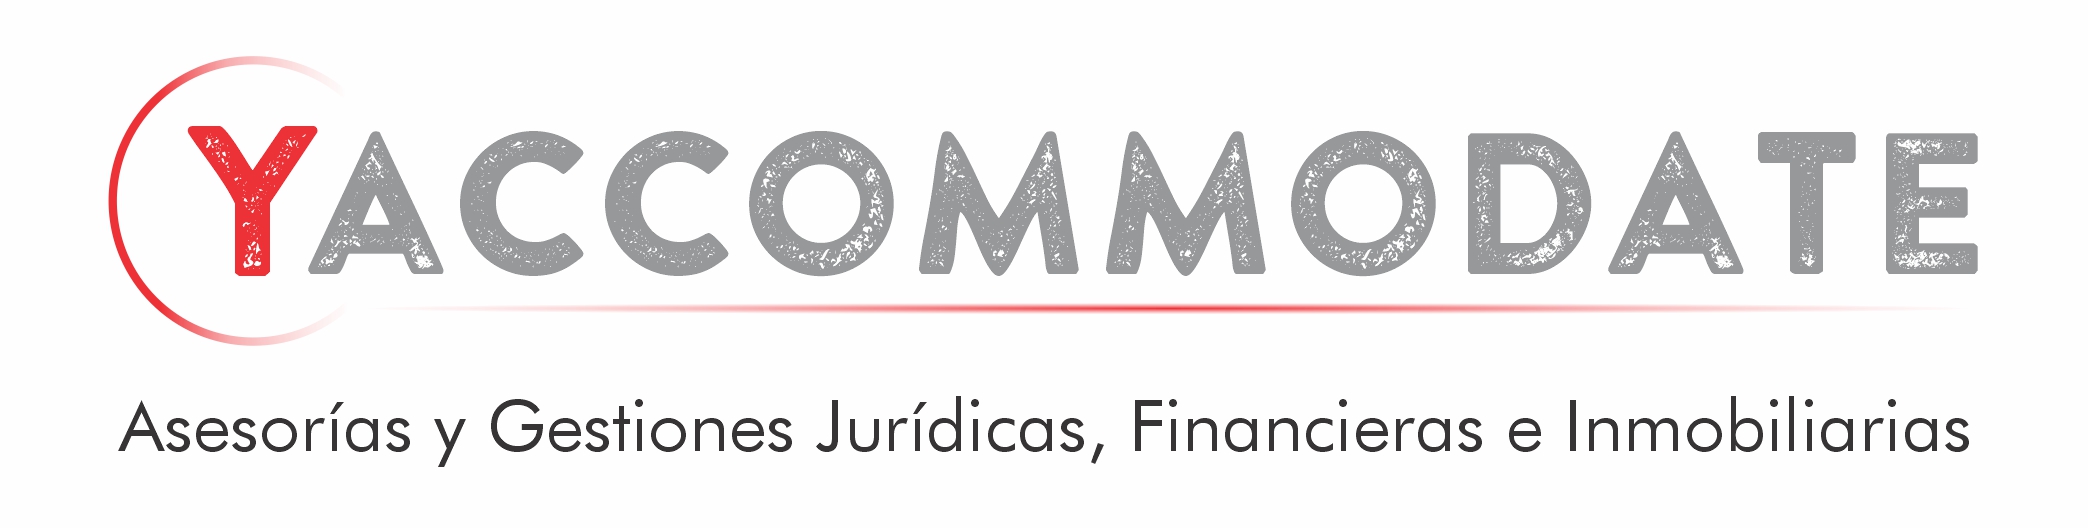 Logotipo para agencia de asesoría y gestiones jurídicas